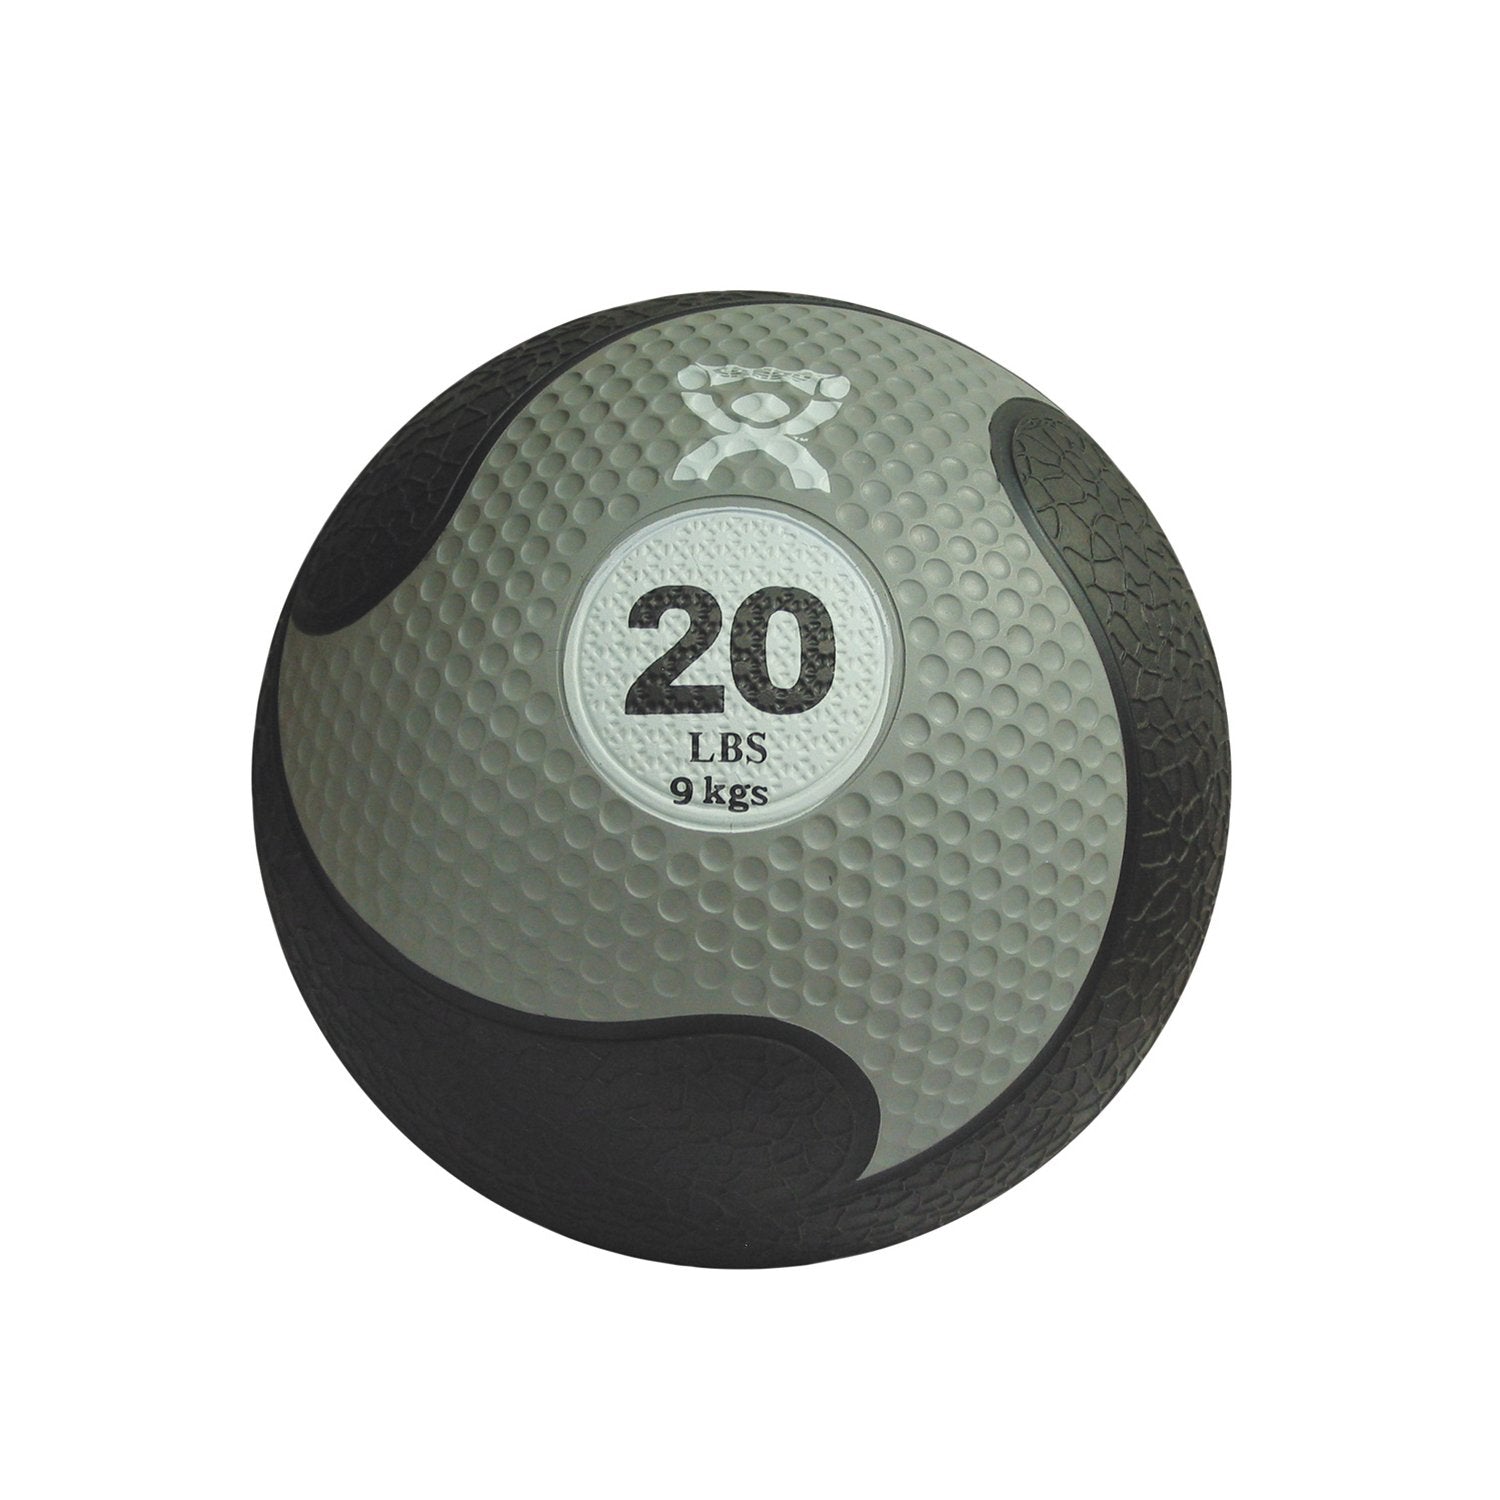 CanDo® Firm Medicine Ball - 11" Diameter - Silver - 20 lb.